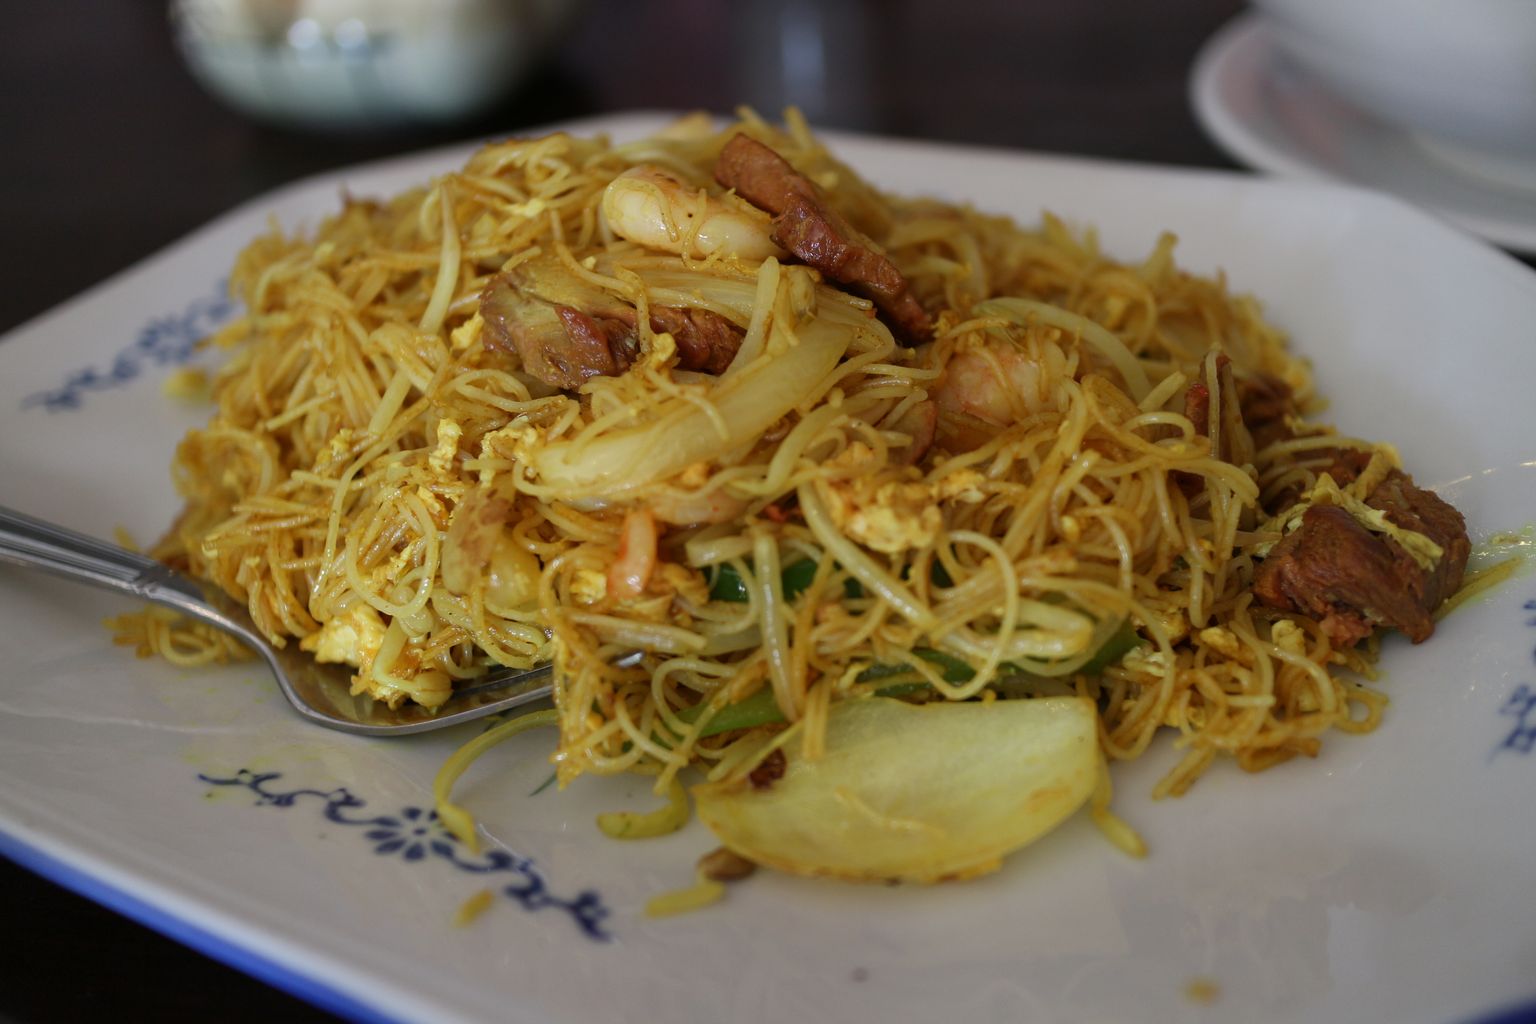 Singapuri nuudlid on Singapuri üheks tuntuimaks kulinaariamagnetiks